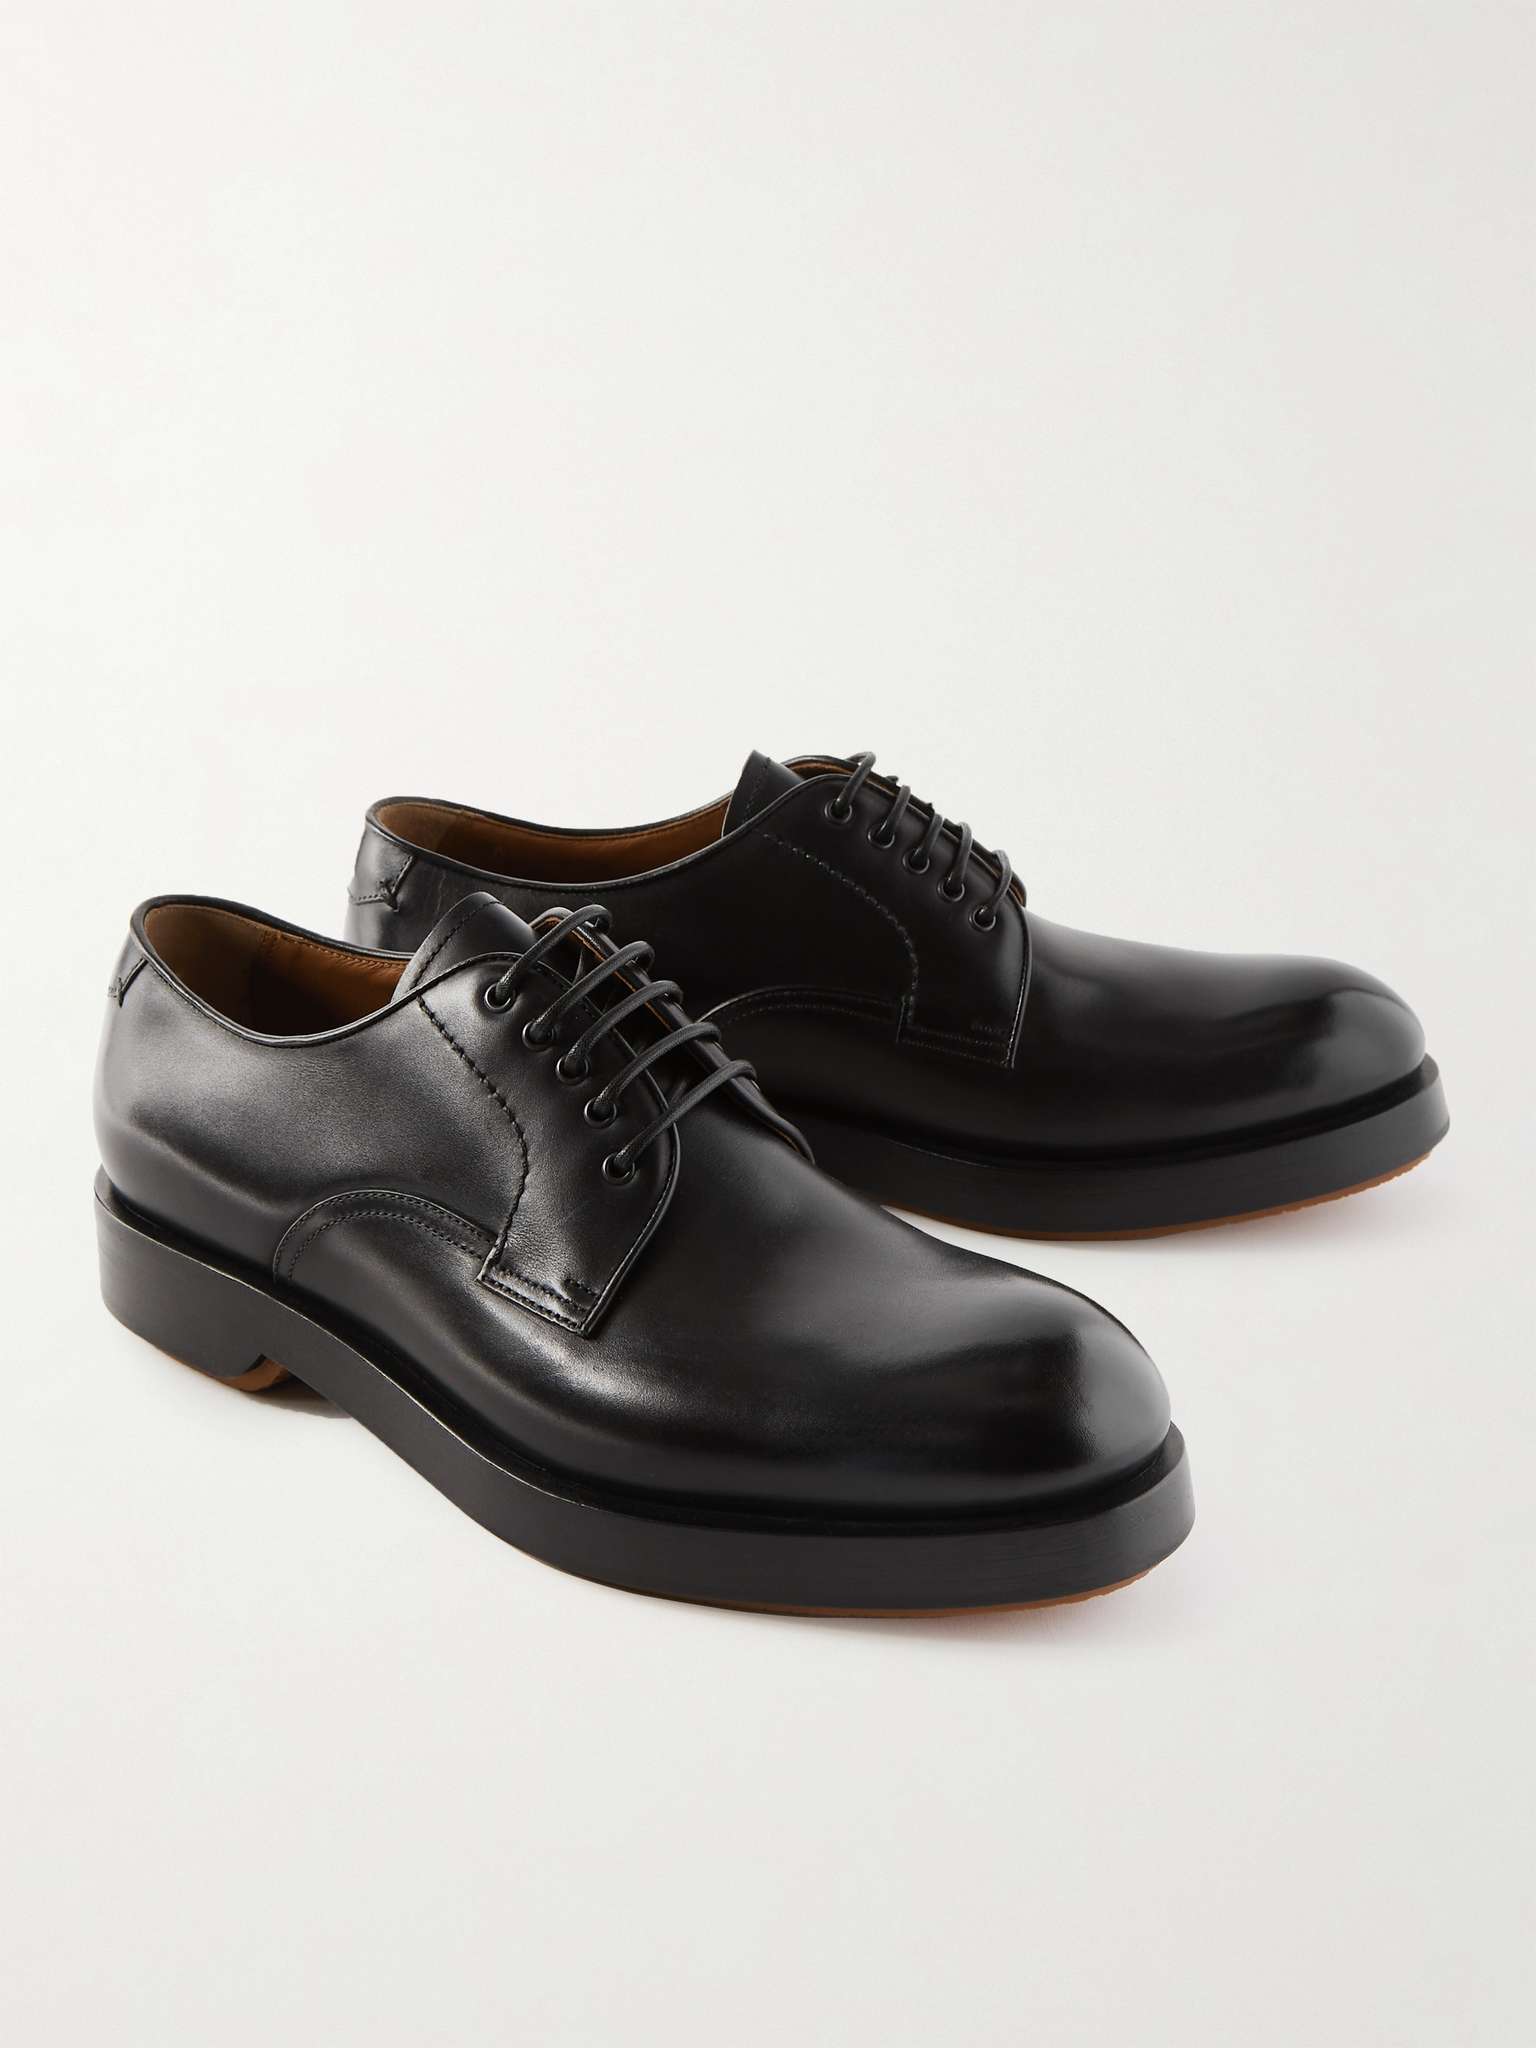 Black Udine Leather Derby Shoes | ZEGNA | MR PORTER